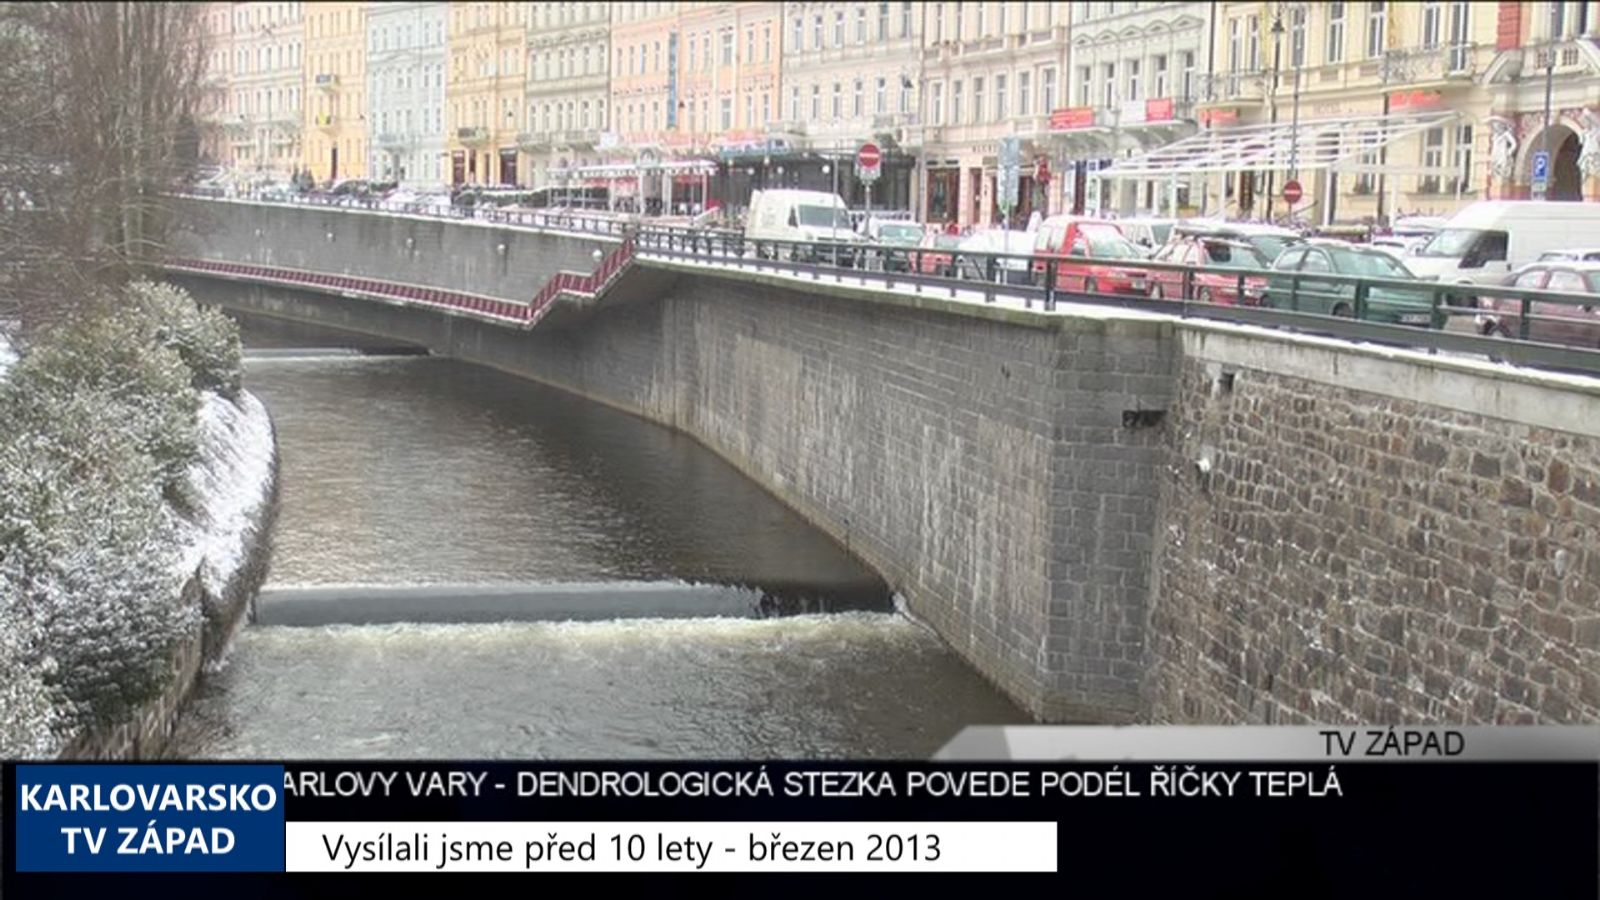 2013 – Karlovy Vary: Dendrologická stezka povede podél říčky Teplá (4916) (TV Západ)